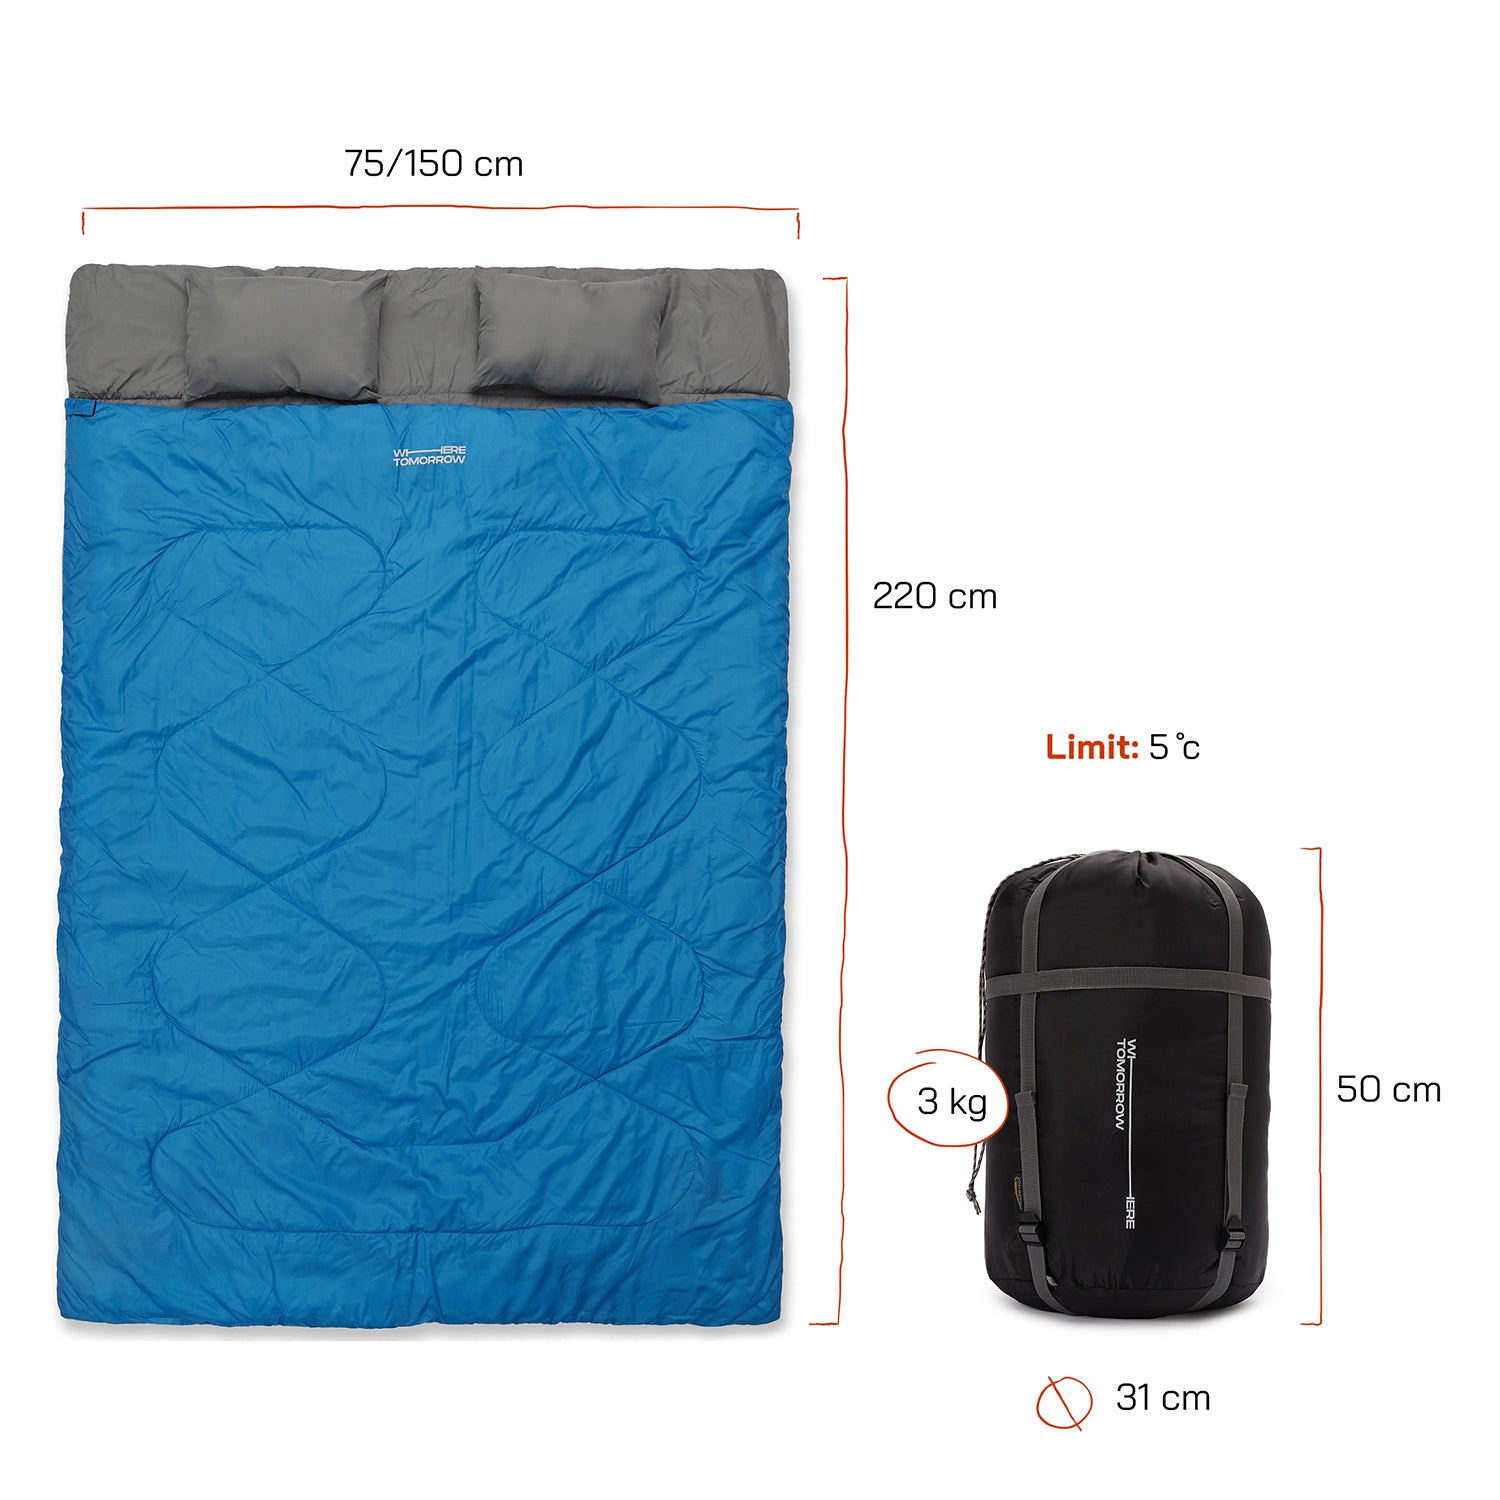 Doppelschlafsack mit Tragetasche - 2-Personen Schlafsack - 190 x 150 cm - Royalblau